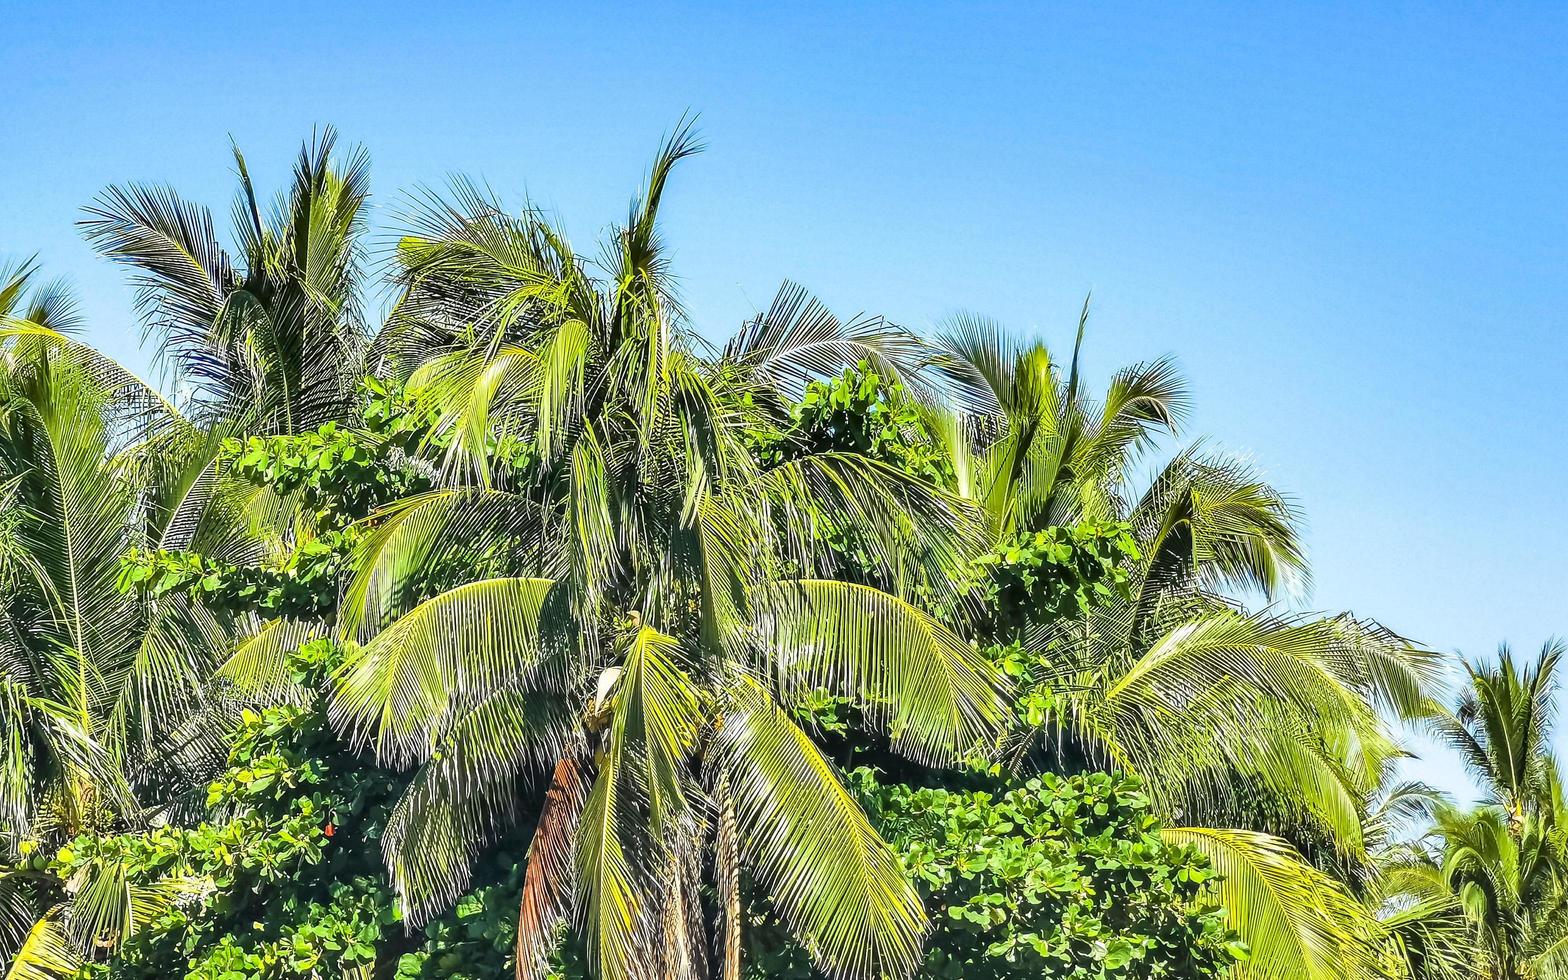 tropisk naturlig handflatan träd kokosnötter blå himmel i Mexiko. foto